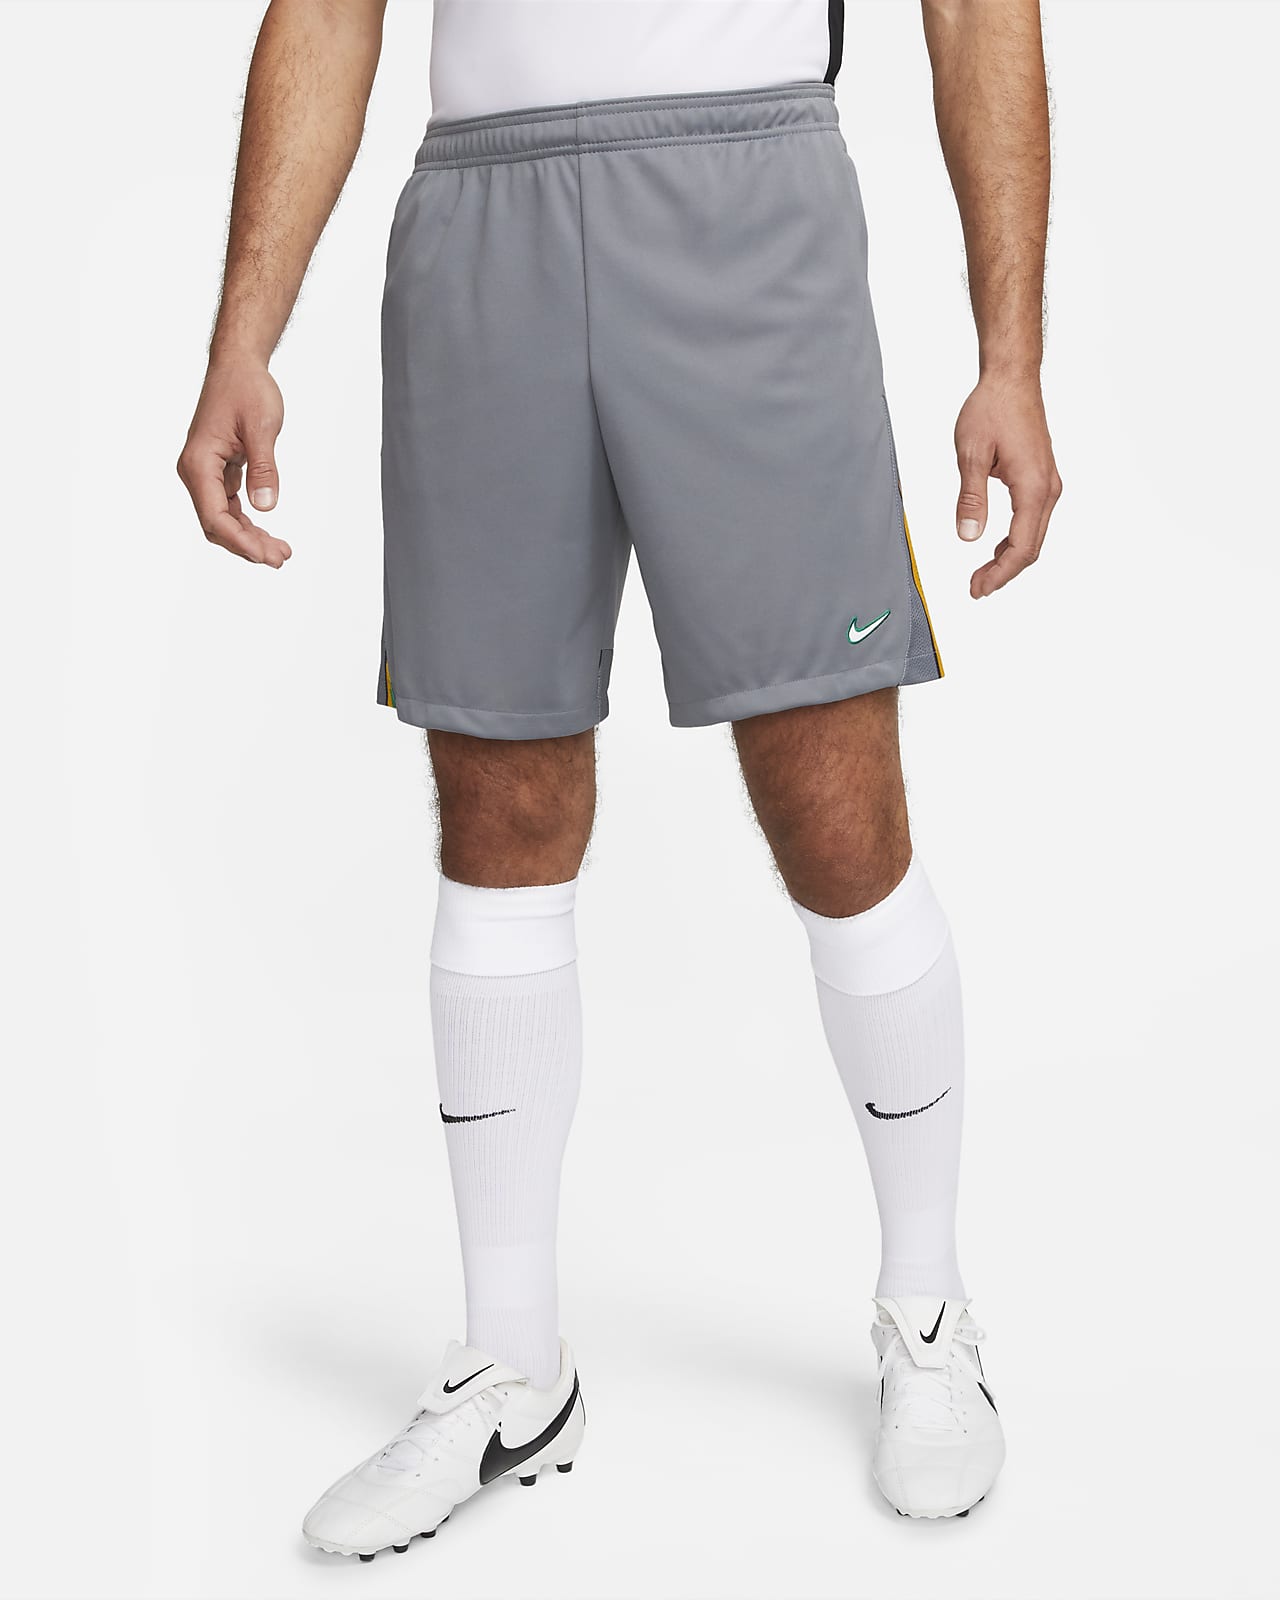 Shorts de fútbol para hombre Dri-FIT Academy Pro. Nike.com